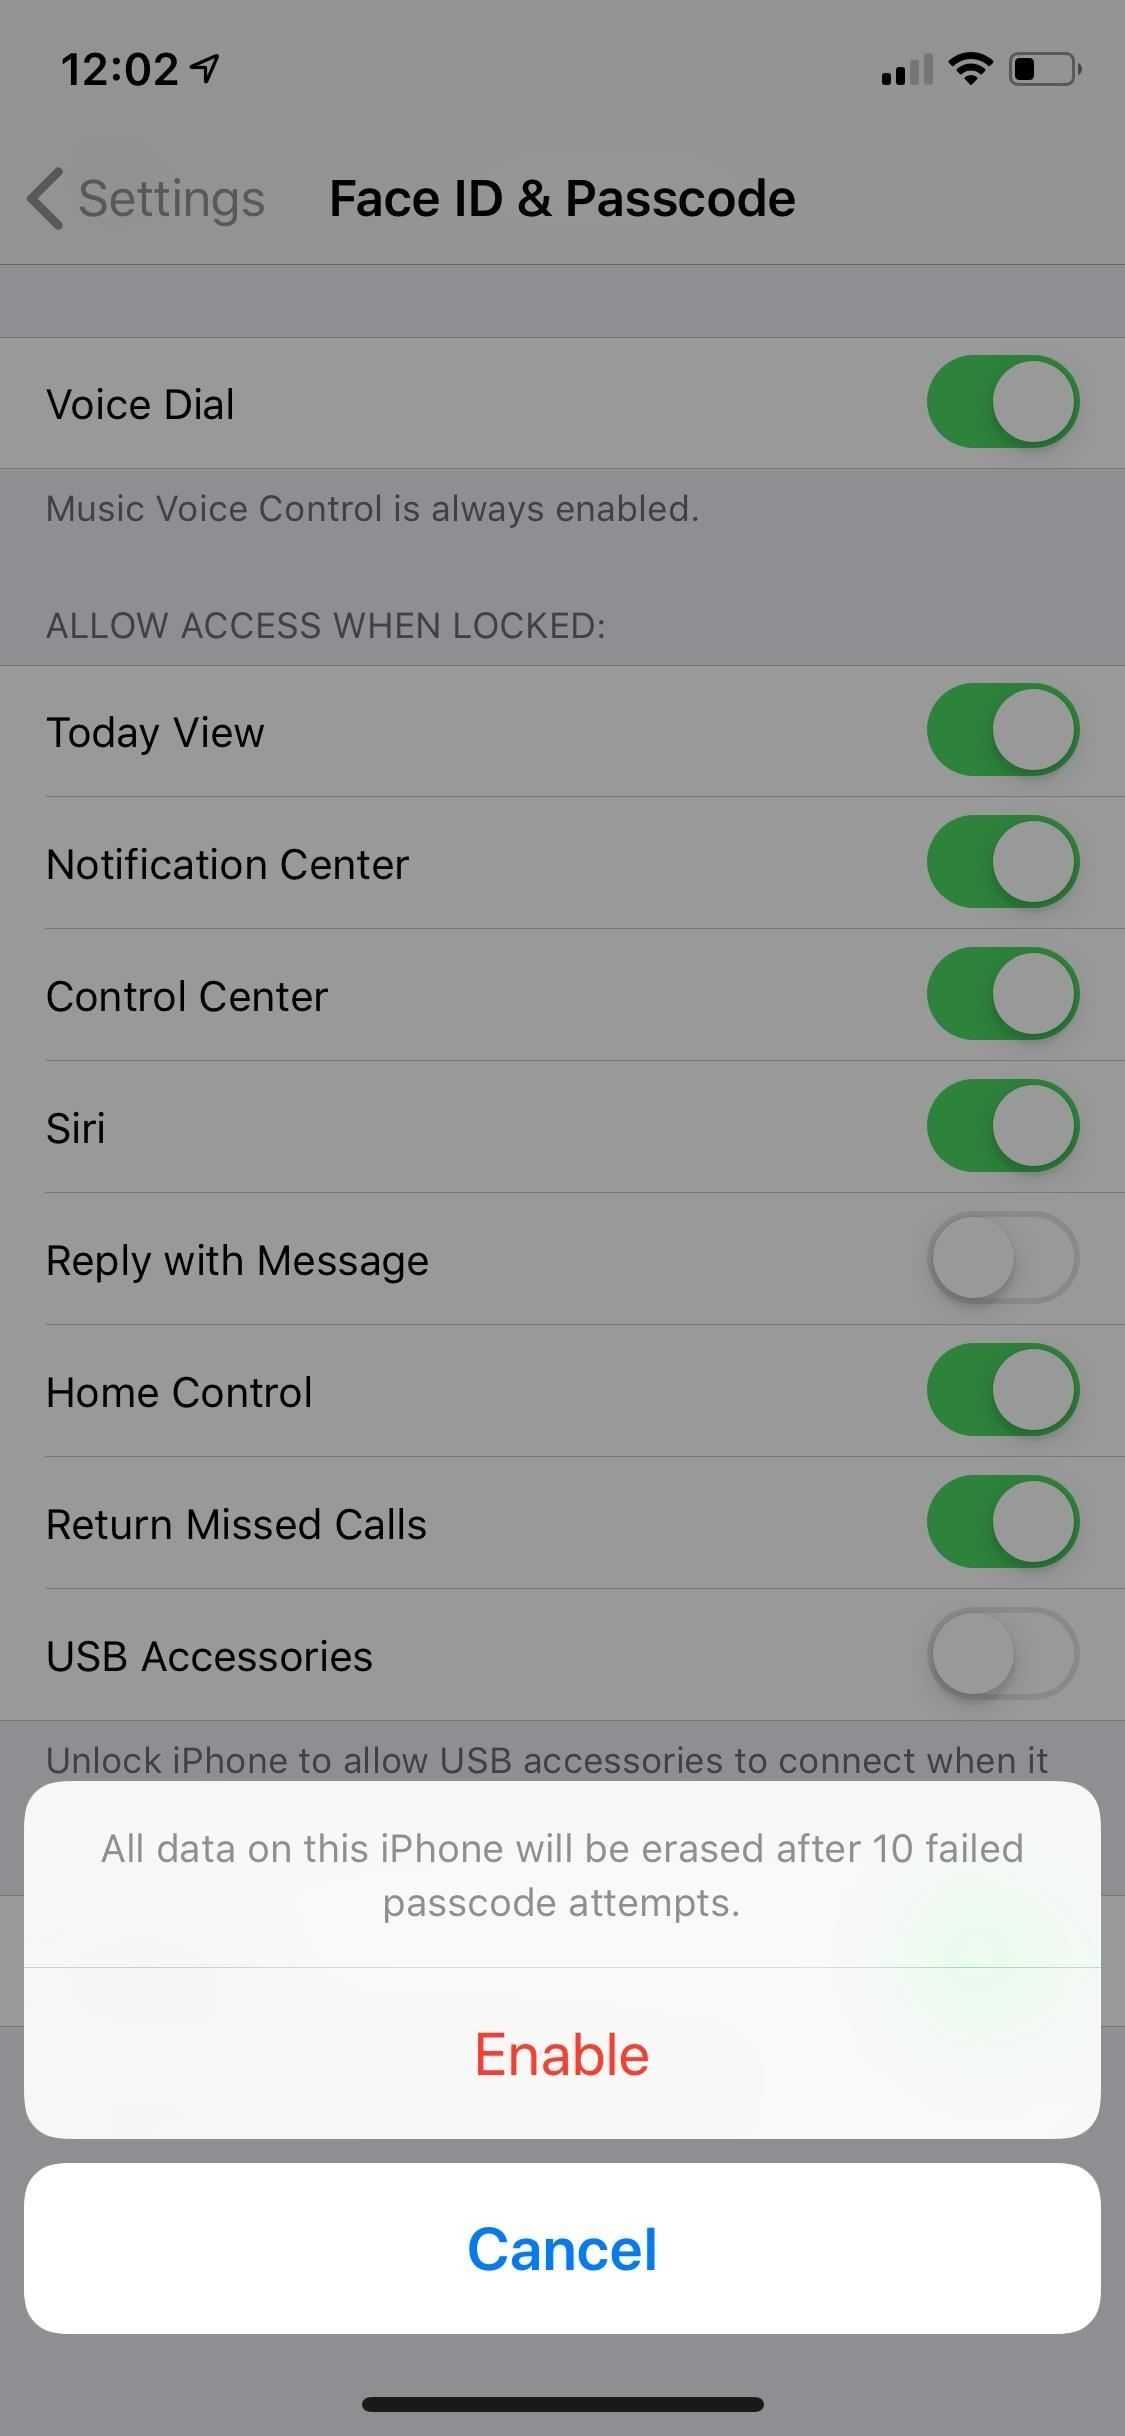 Как восстановить удаленный контакт на iphone или все контакты. инструкция